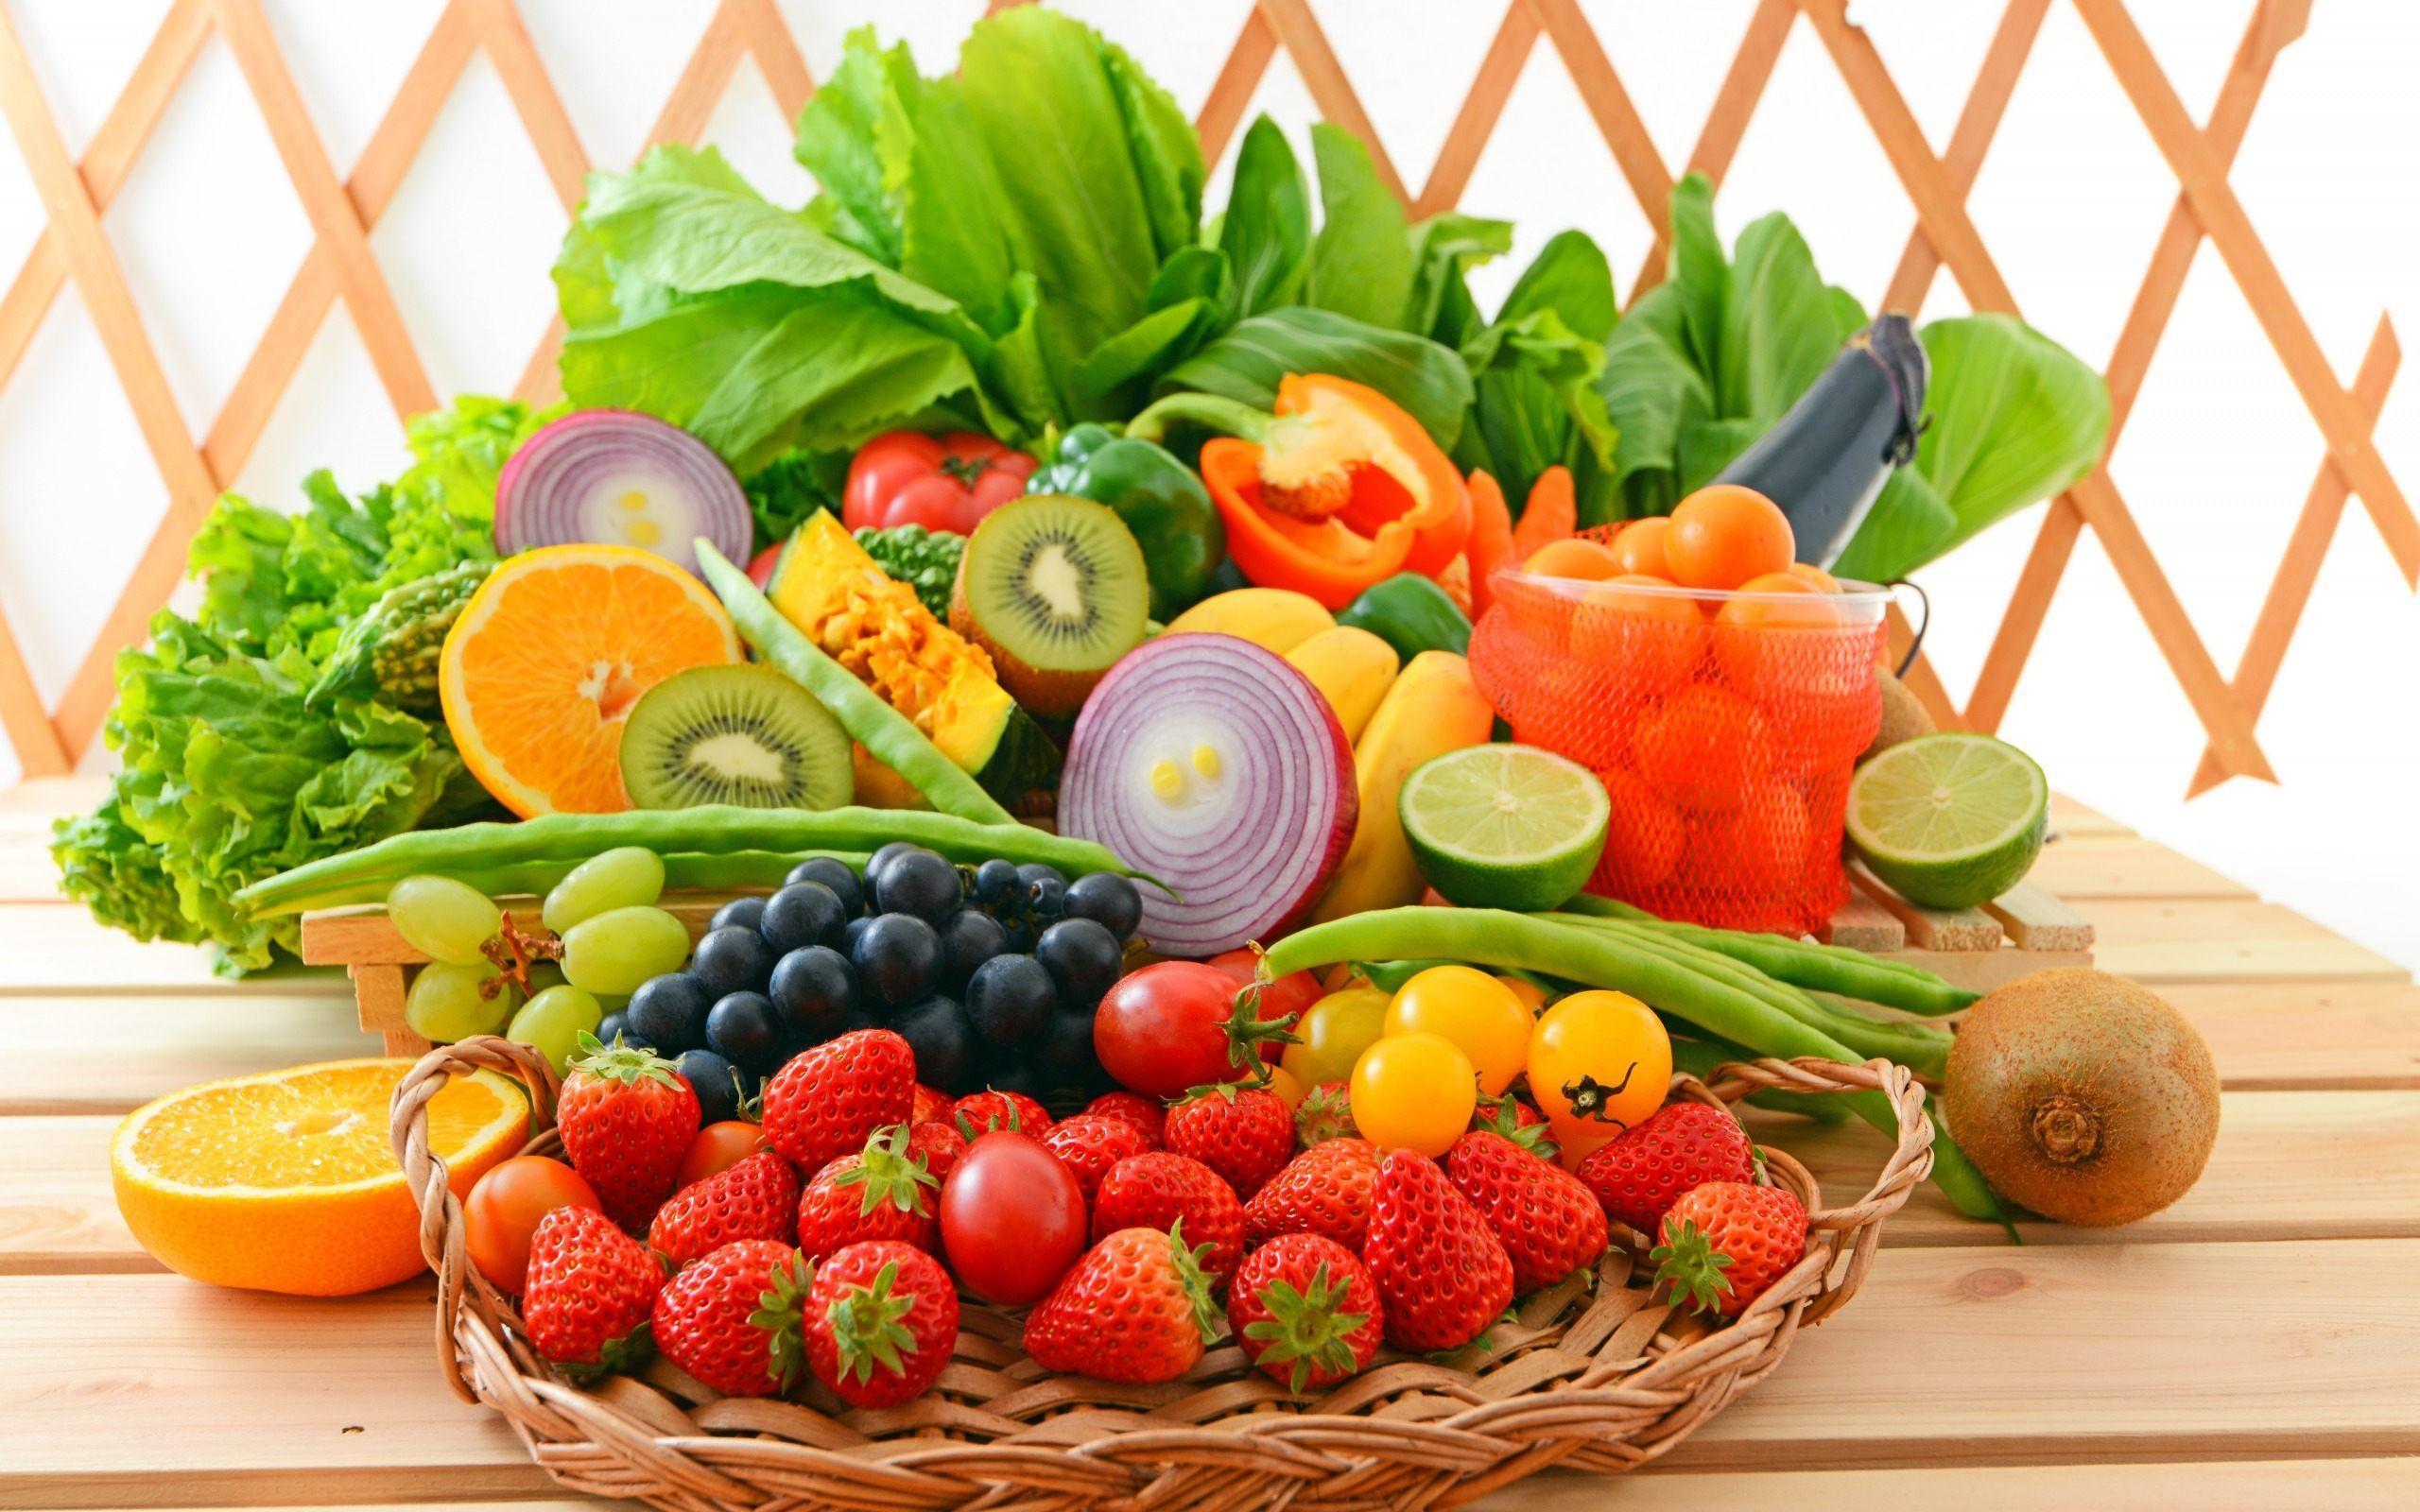 Fruits & Vegetables Background Wallpaper